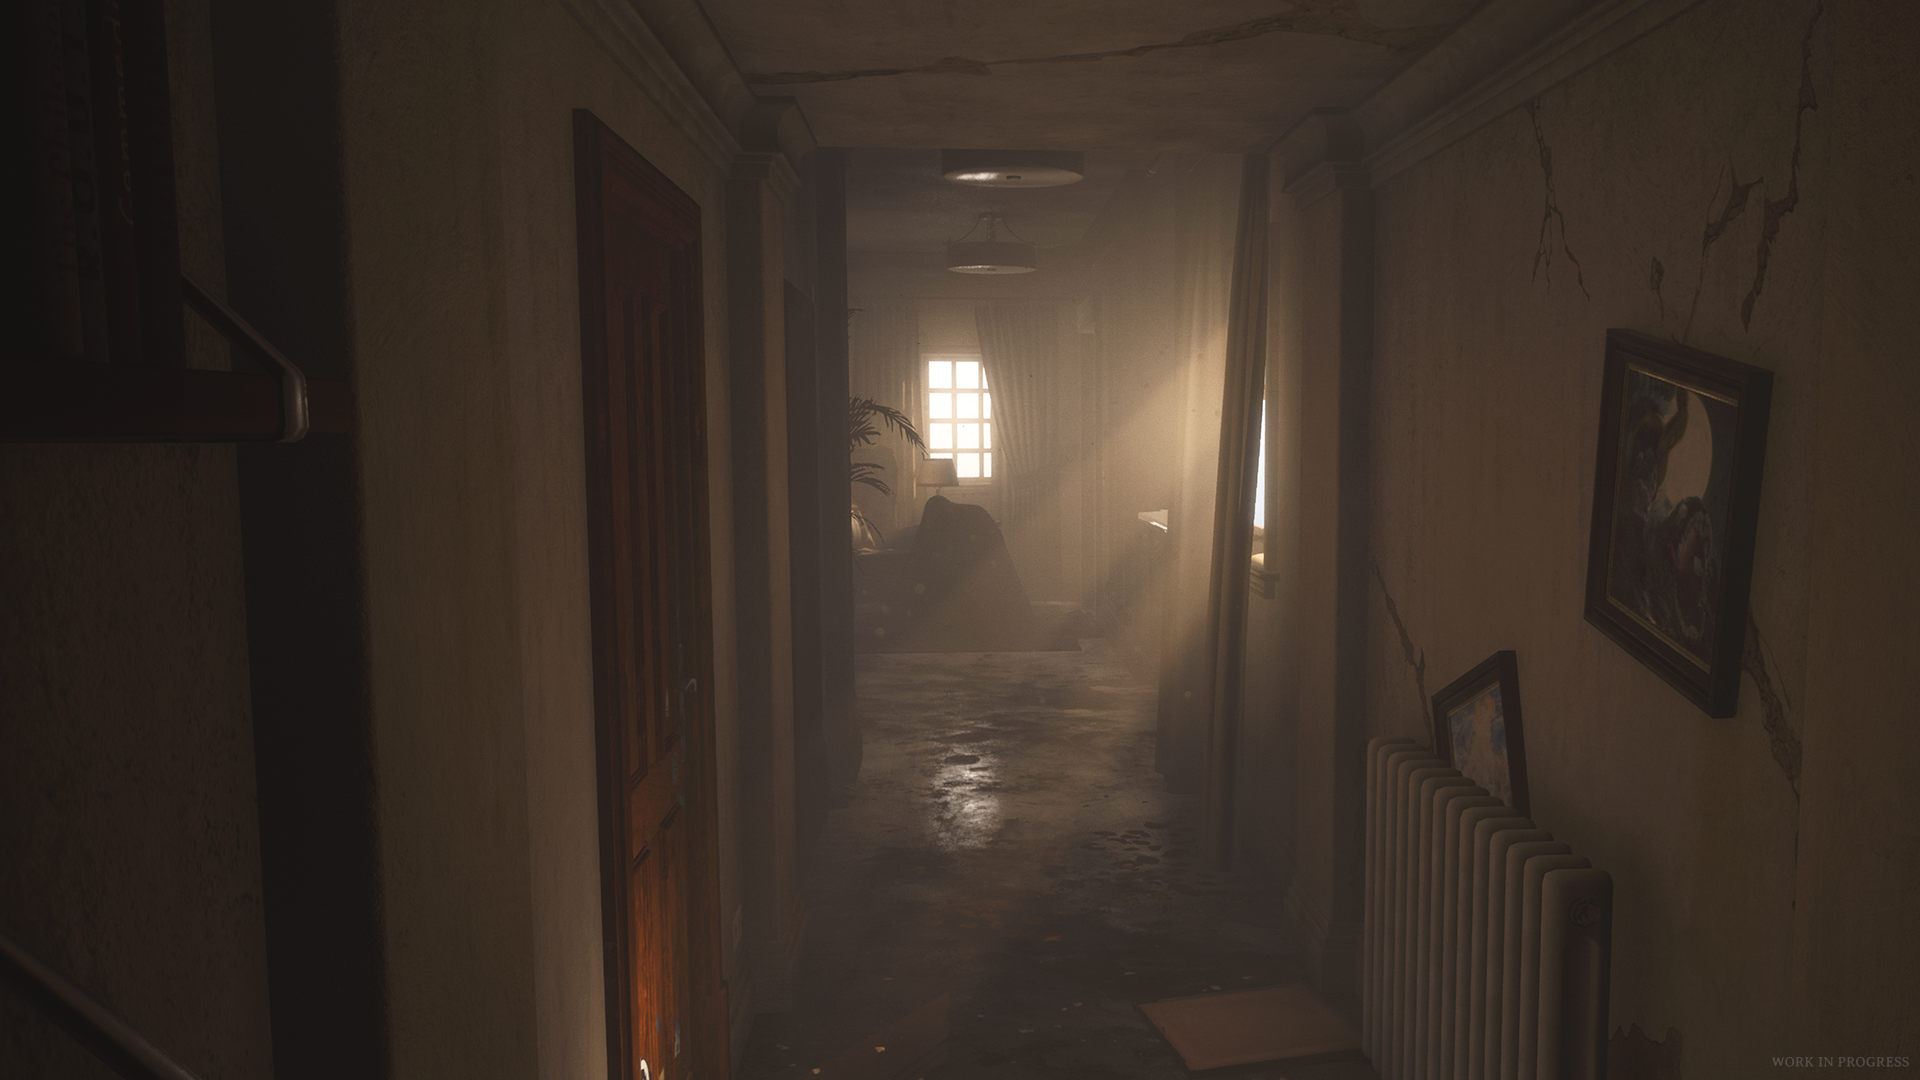 Luto, game de terror, será lançado em 2022 para PS4 e PS5